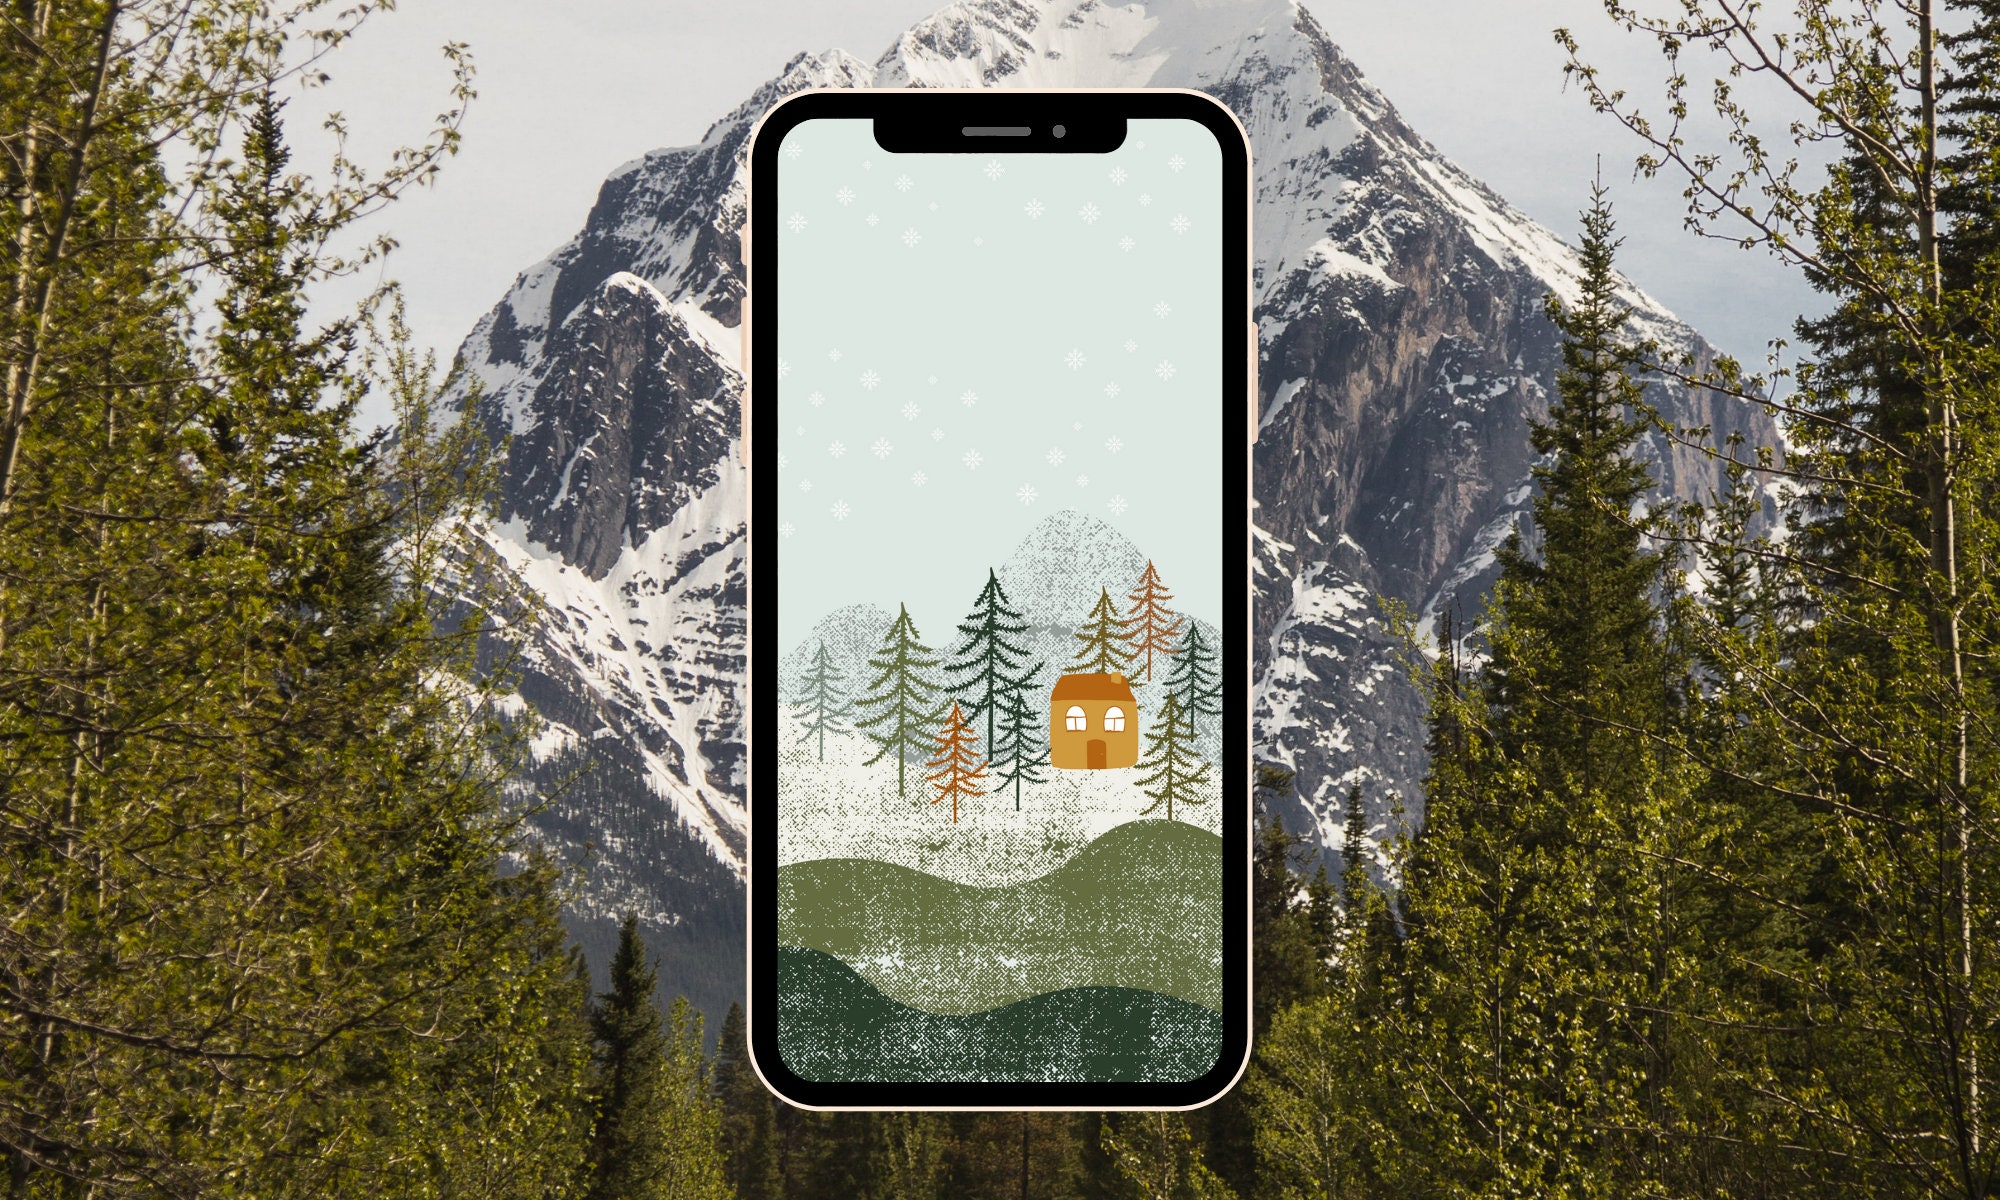 Hình nền mùa đông điện thoại sẽ đưa bạn vào một thế giới rực rỡ của mùa đông đầy ma mị và tuyệt đẹp. Với những hình ảnh tuyệt đẹp về tuyết, bạn sẽ cảm nhận được sự lãng mạn và tuyệt vời của mùa đông.